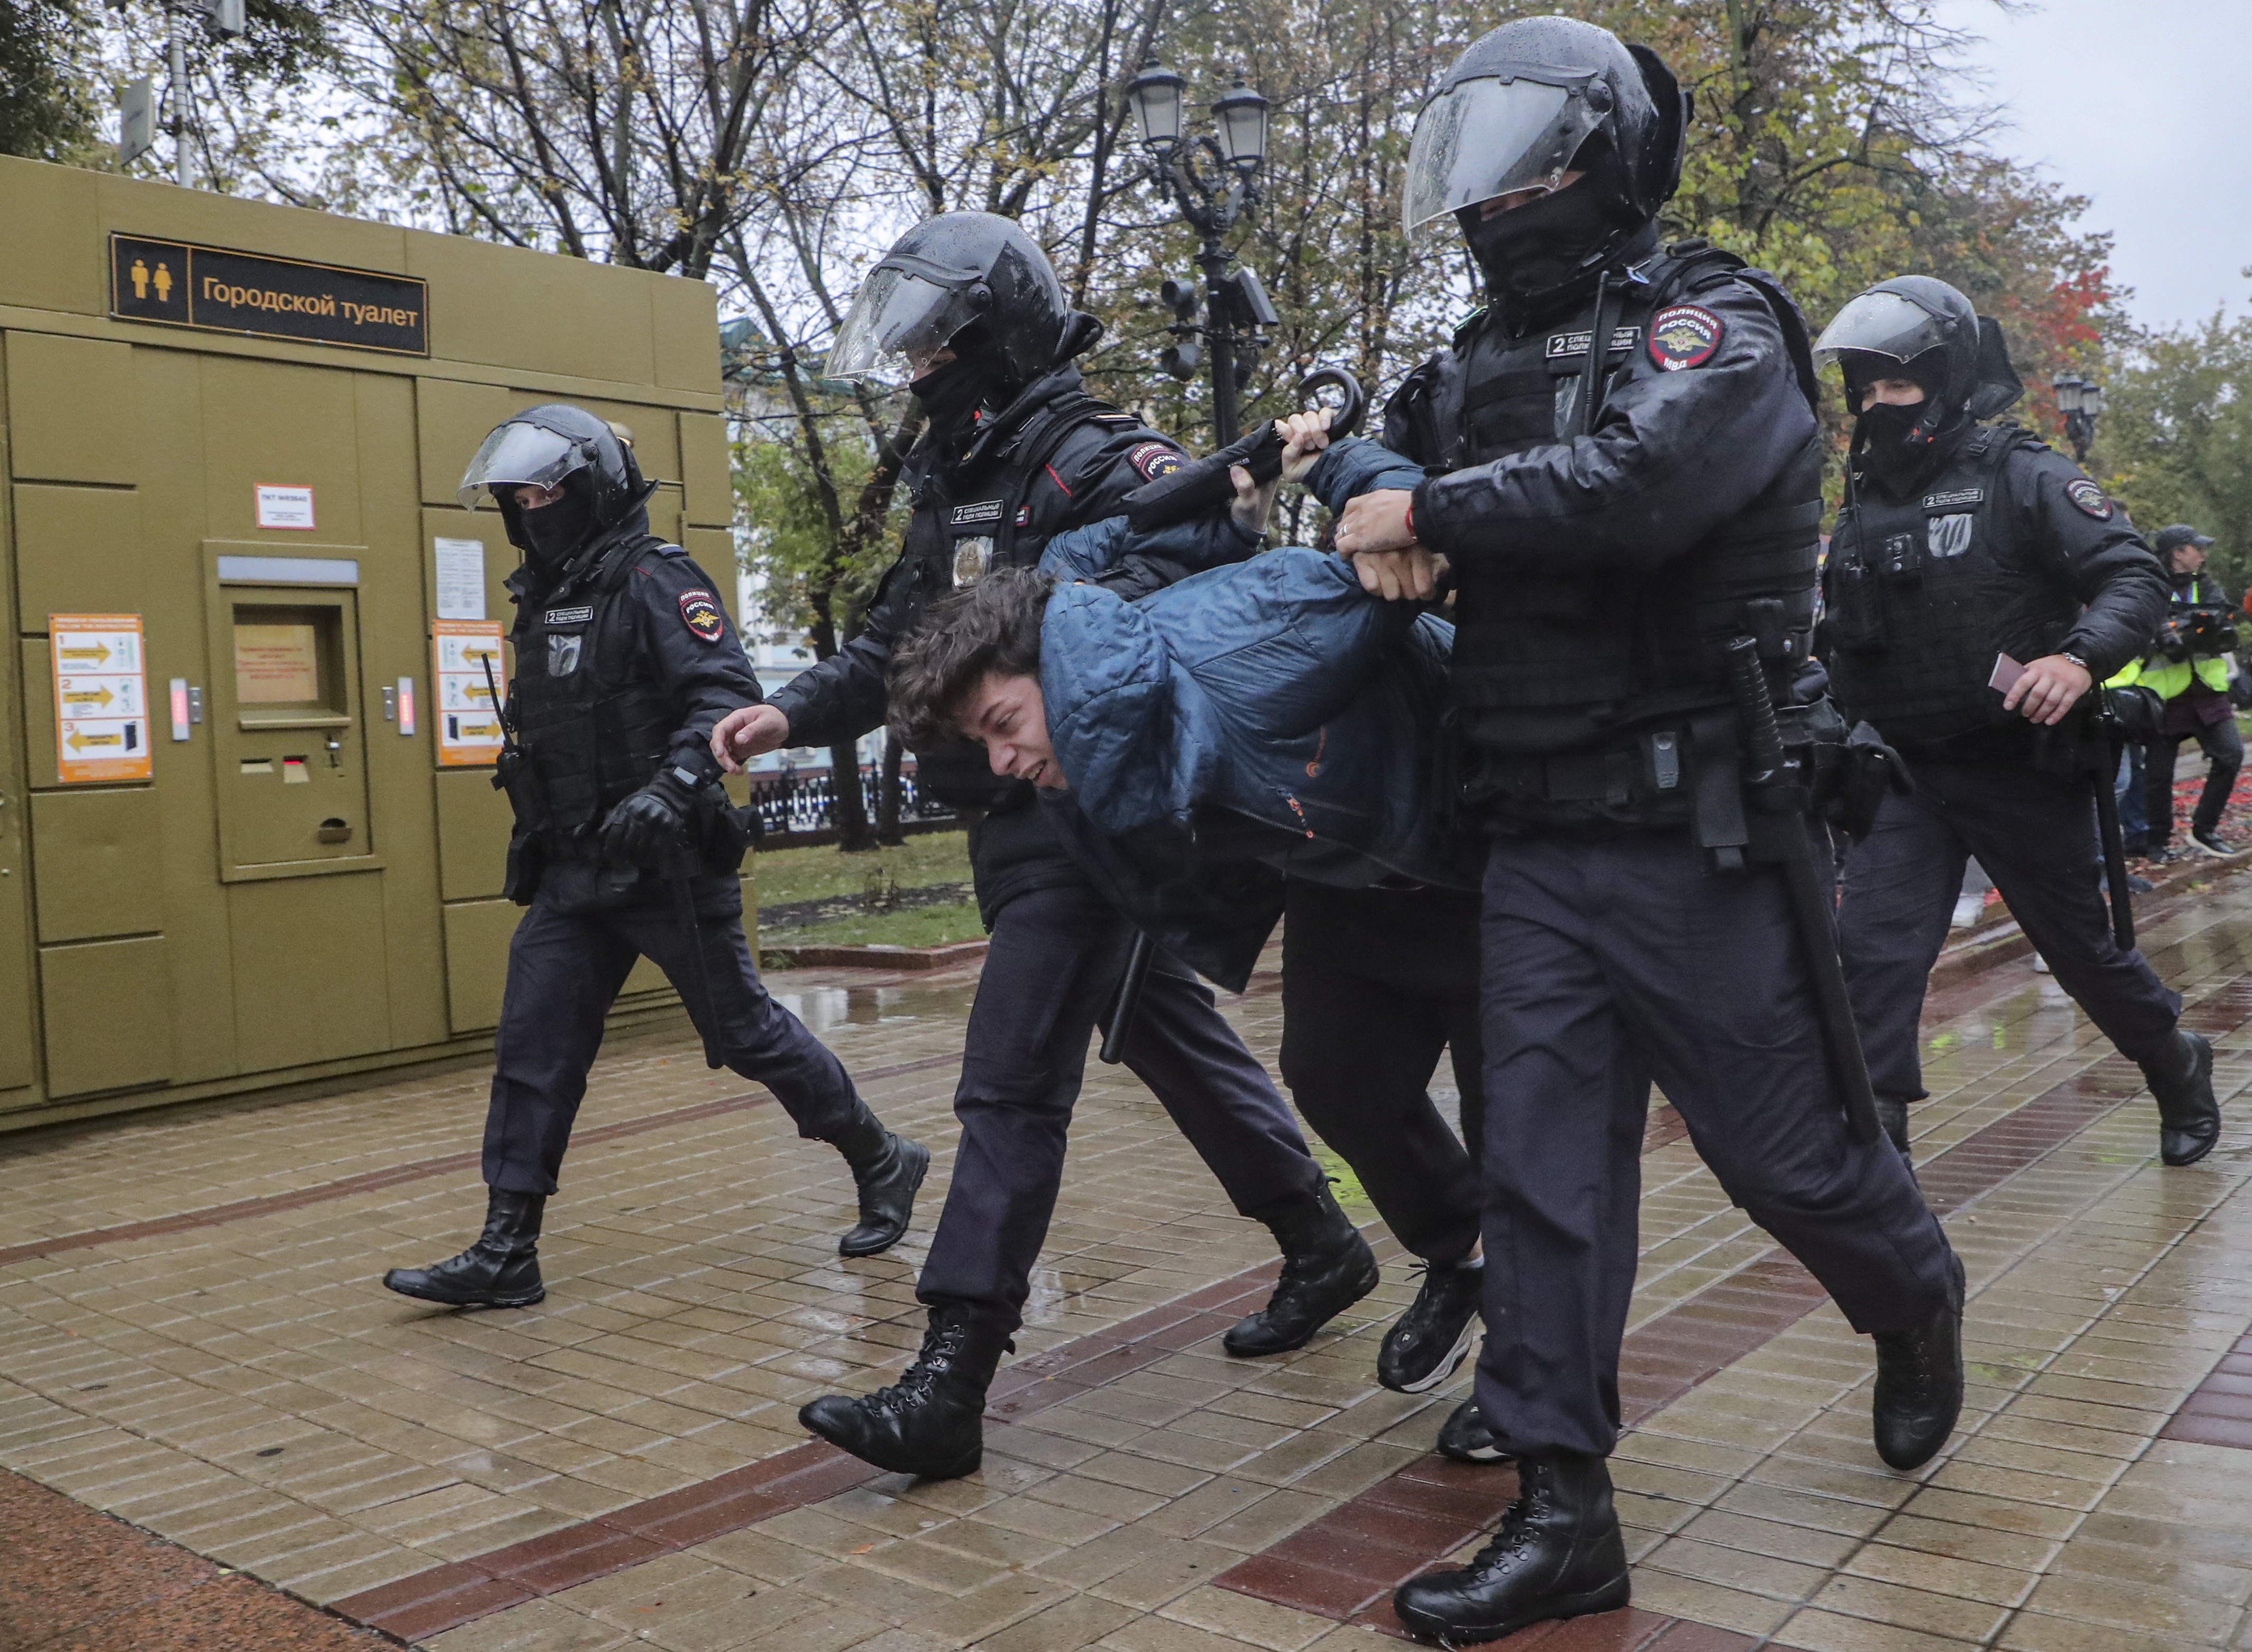 동원 반대 시위 참가자가 러시아 경찰에 의해 끌려가는 모습. 러시아 정부의 부분 동원령 발표 이후 동원에 반대하는 시위가 러시아 주요 도시 곳곳에서 벌어졌다.   (사진 연합뉴스)